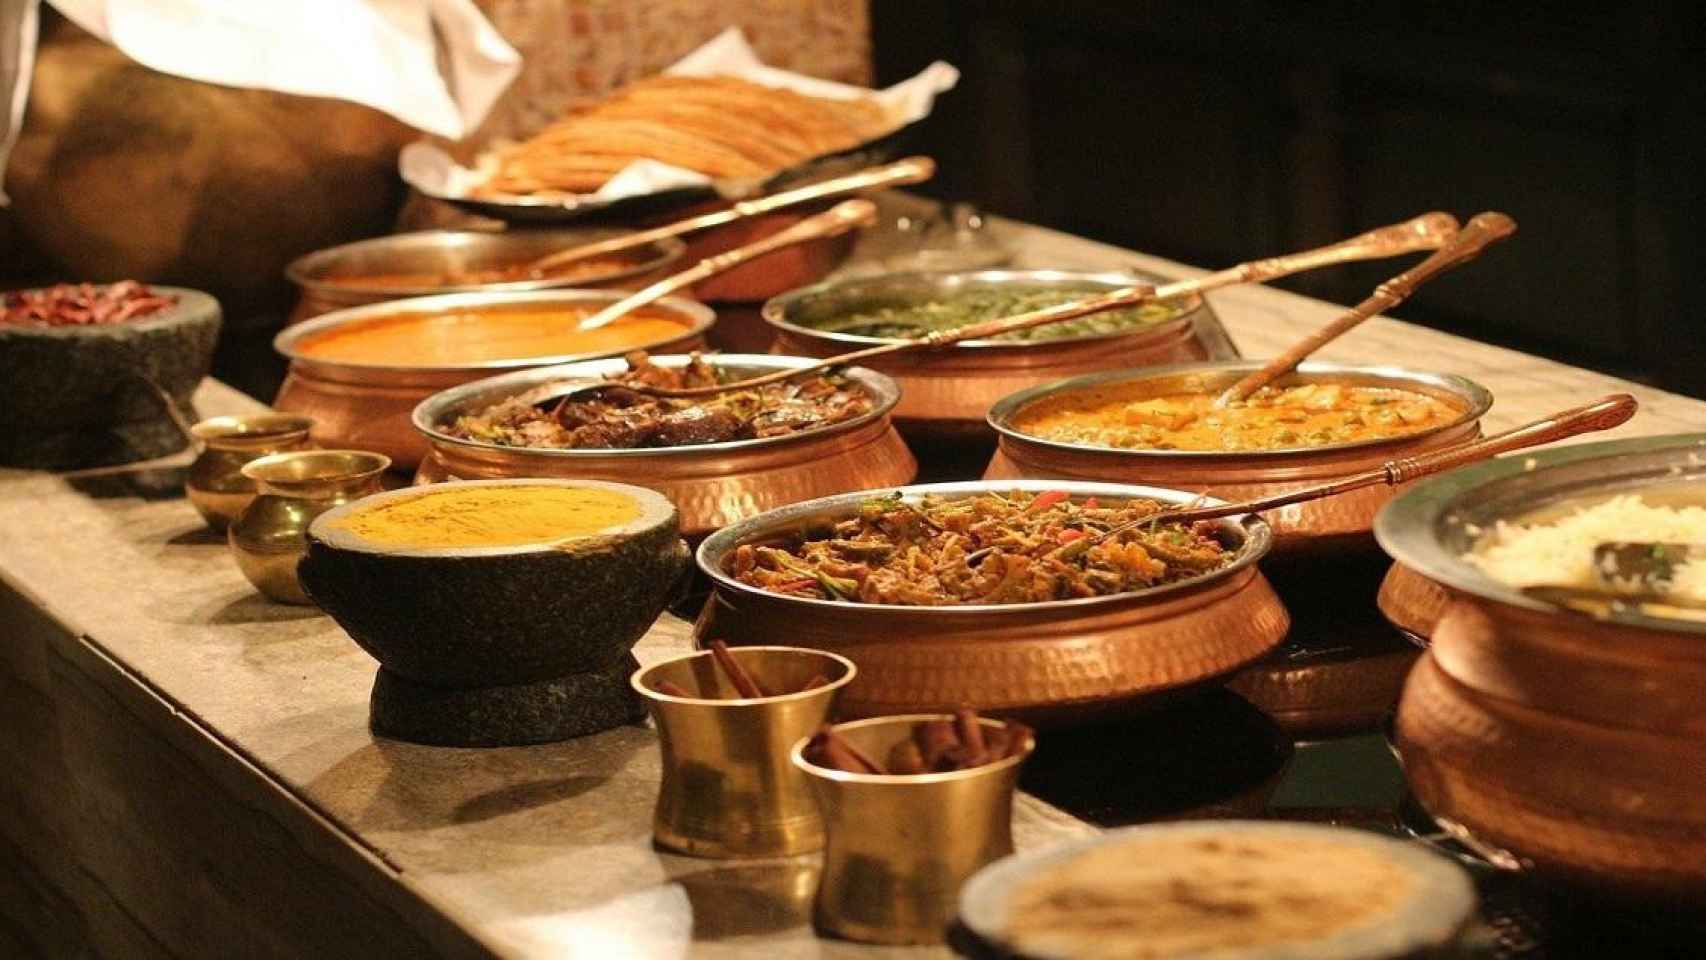 Un ejemplo de gastronomía india / PublicDomainPictures EN PIXABAY